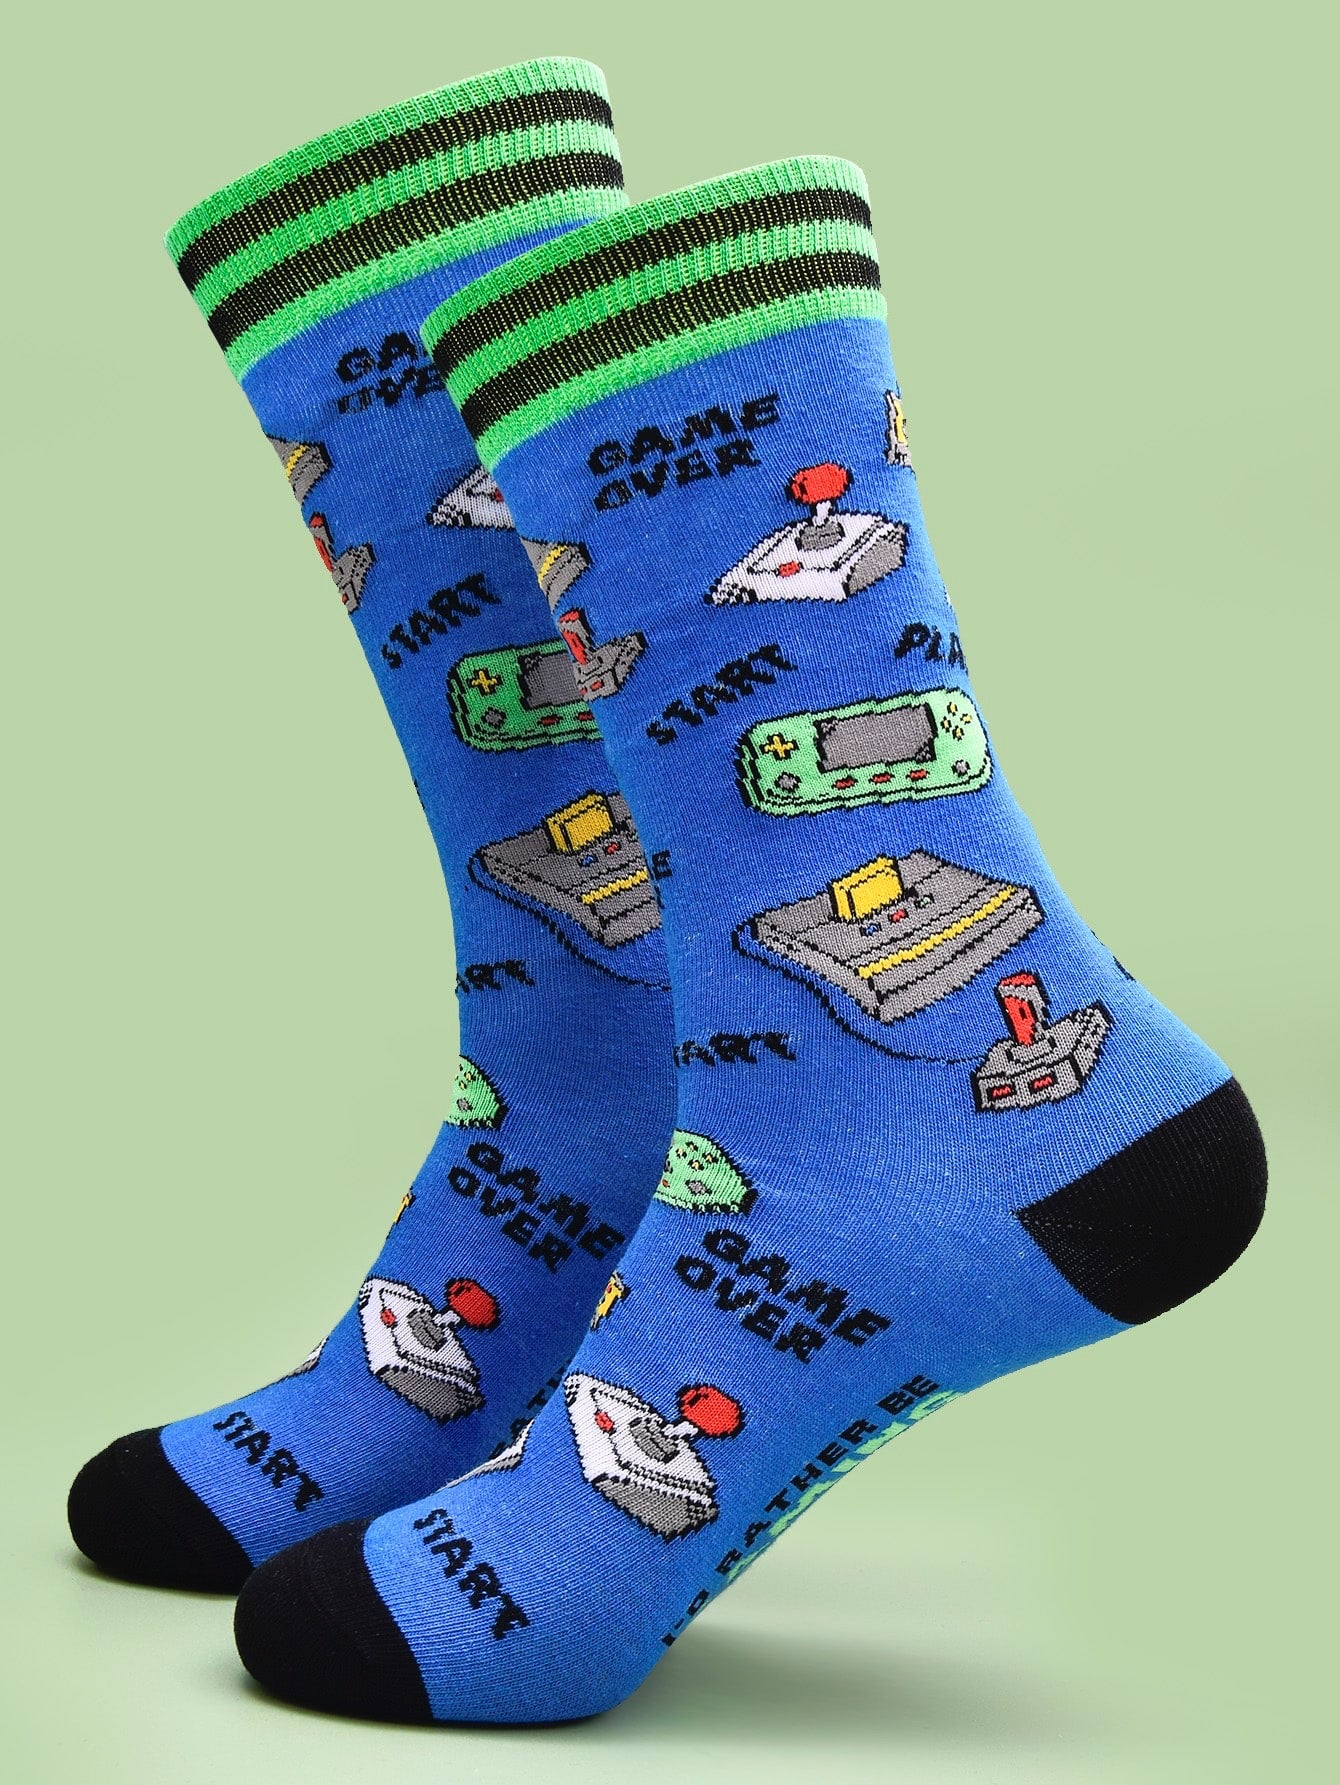 Gamer Novelty Socks, Adult Socks, Blue Socks